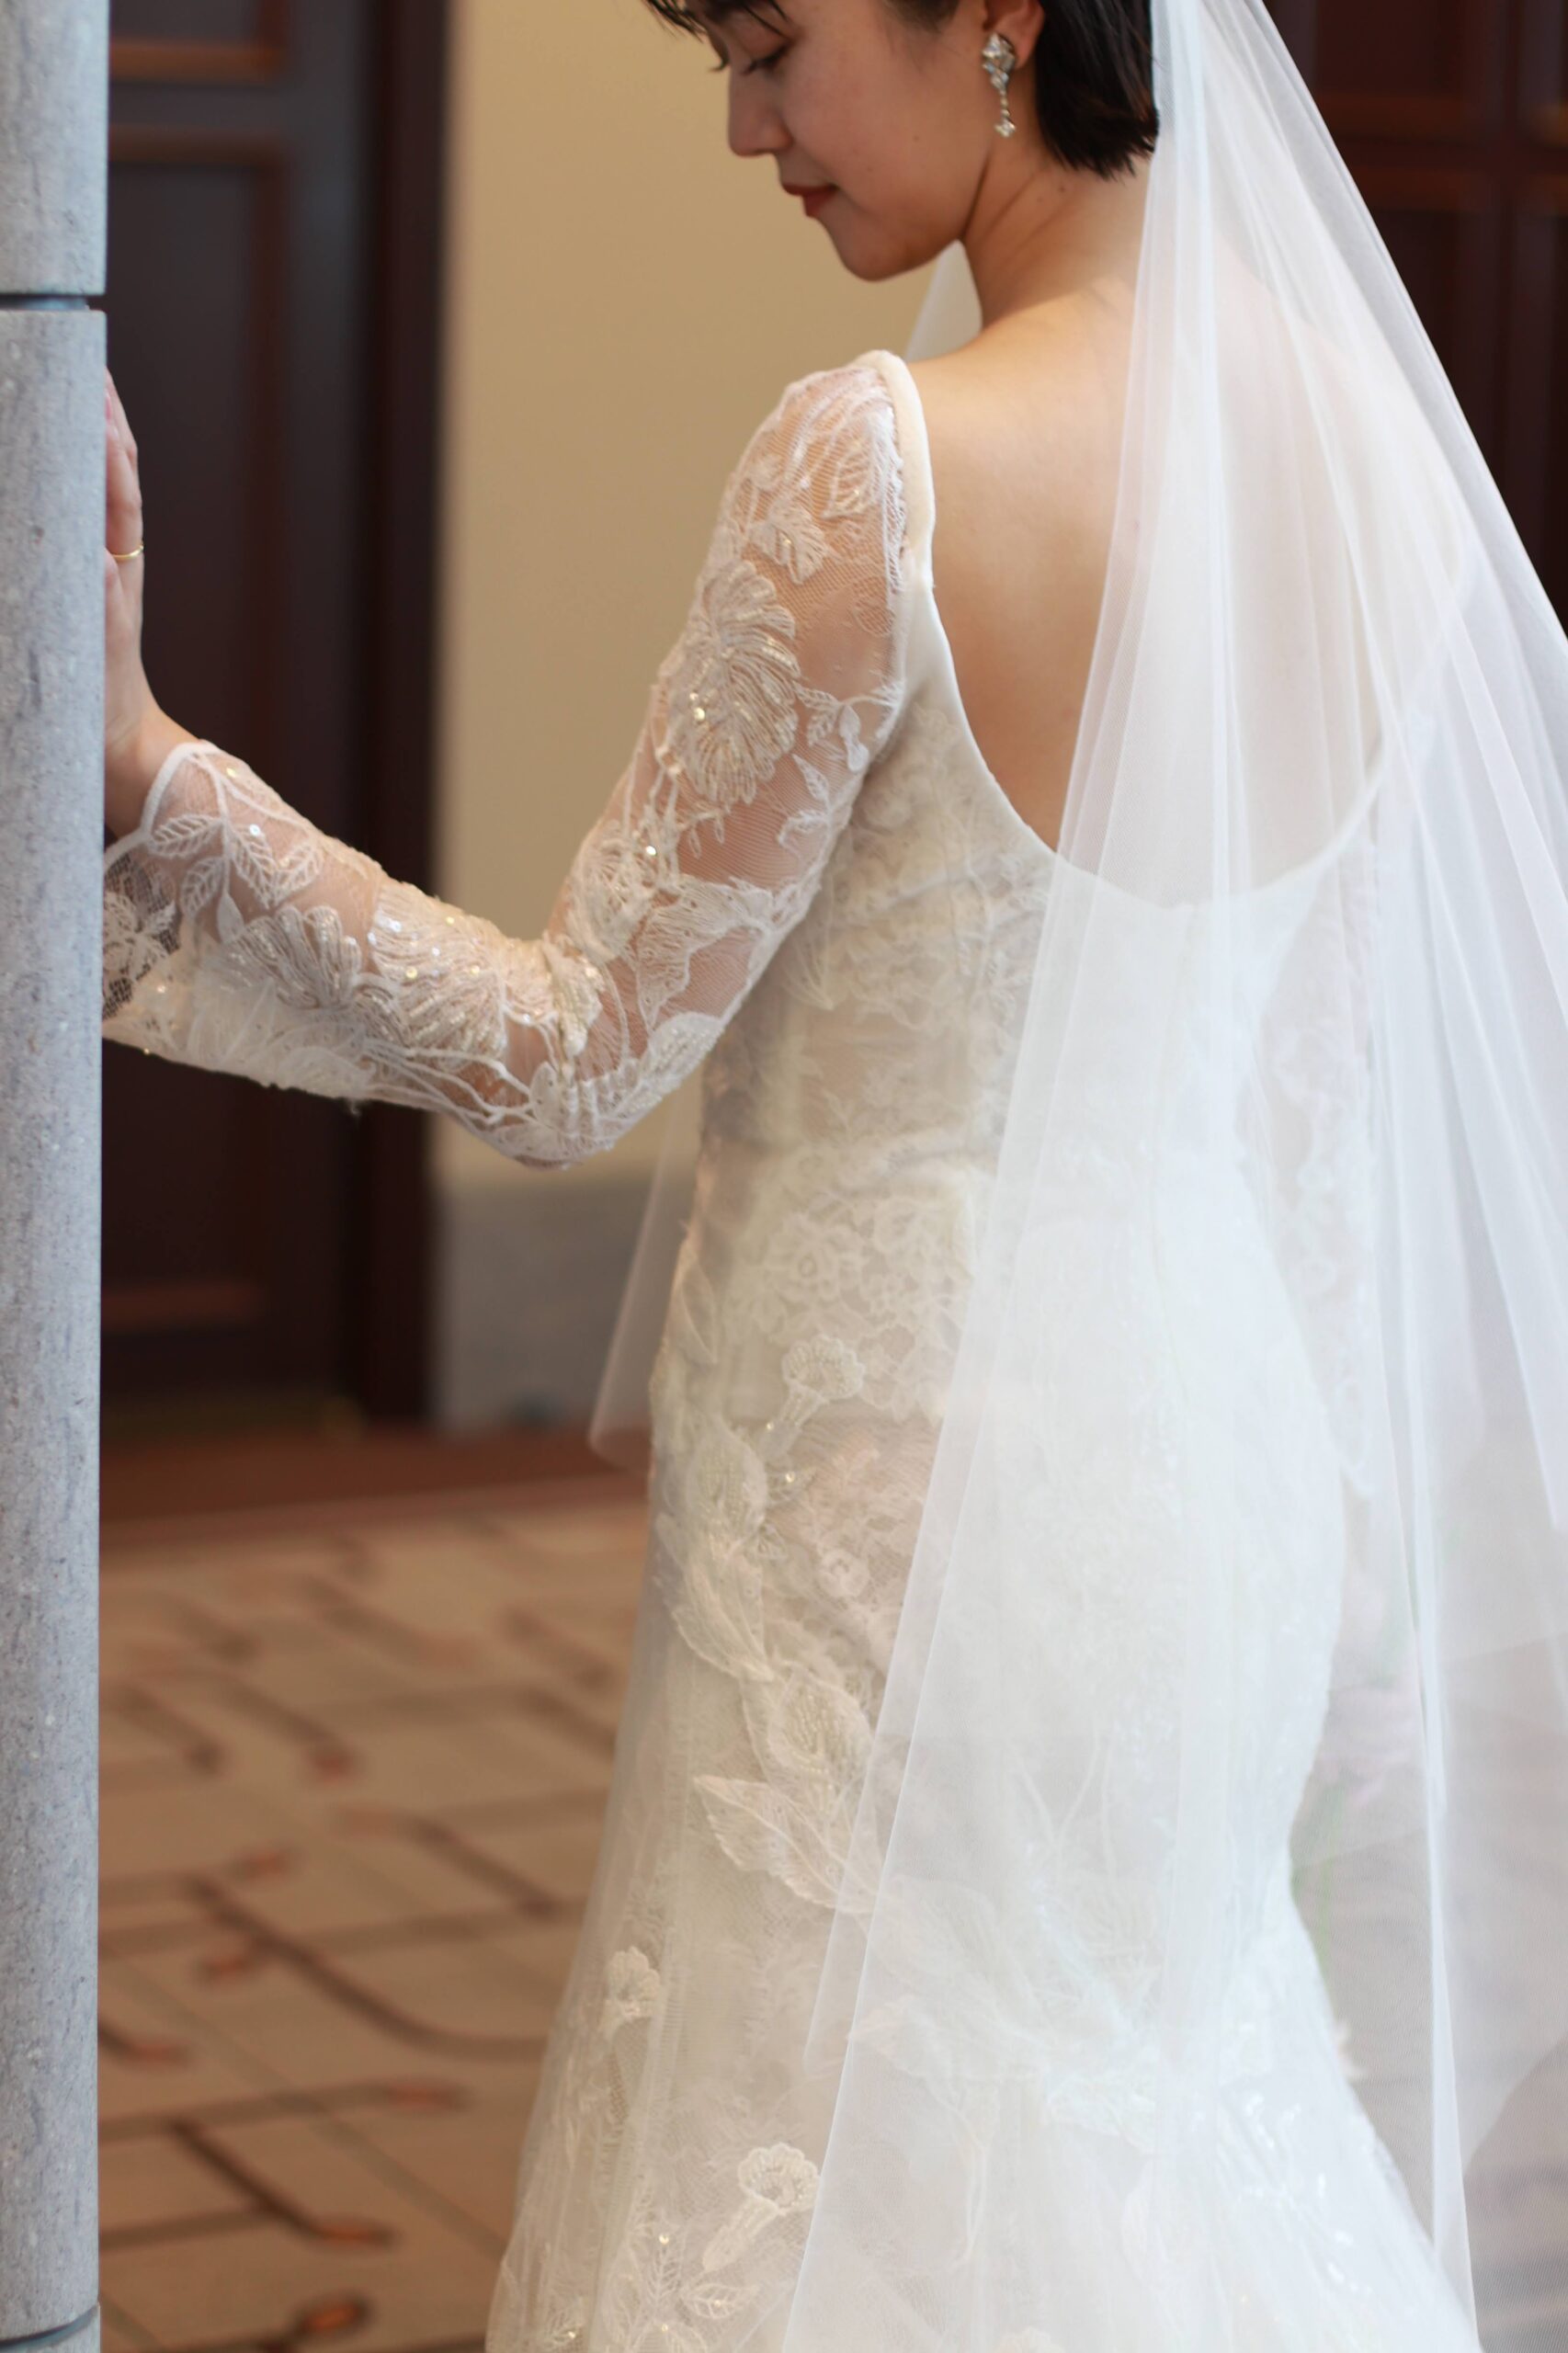 トリート花嫁に人気のブランド、リームアクラの新作ウェディングドレスは、ペイントのような立体的で美しい刺繍と、キラッと輝くビジューの組み合わせが美しい一着です